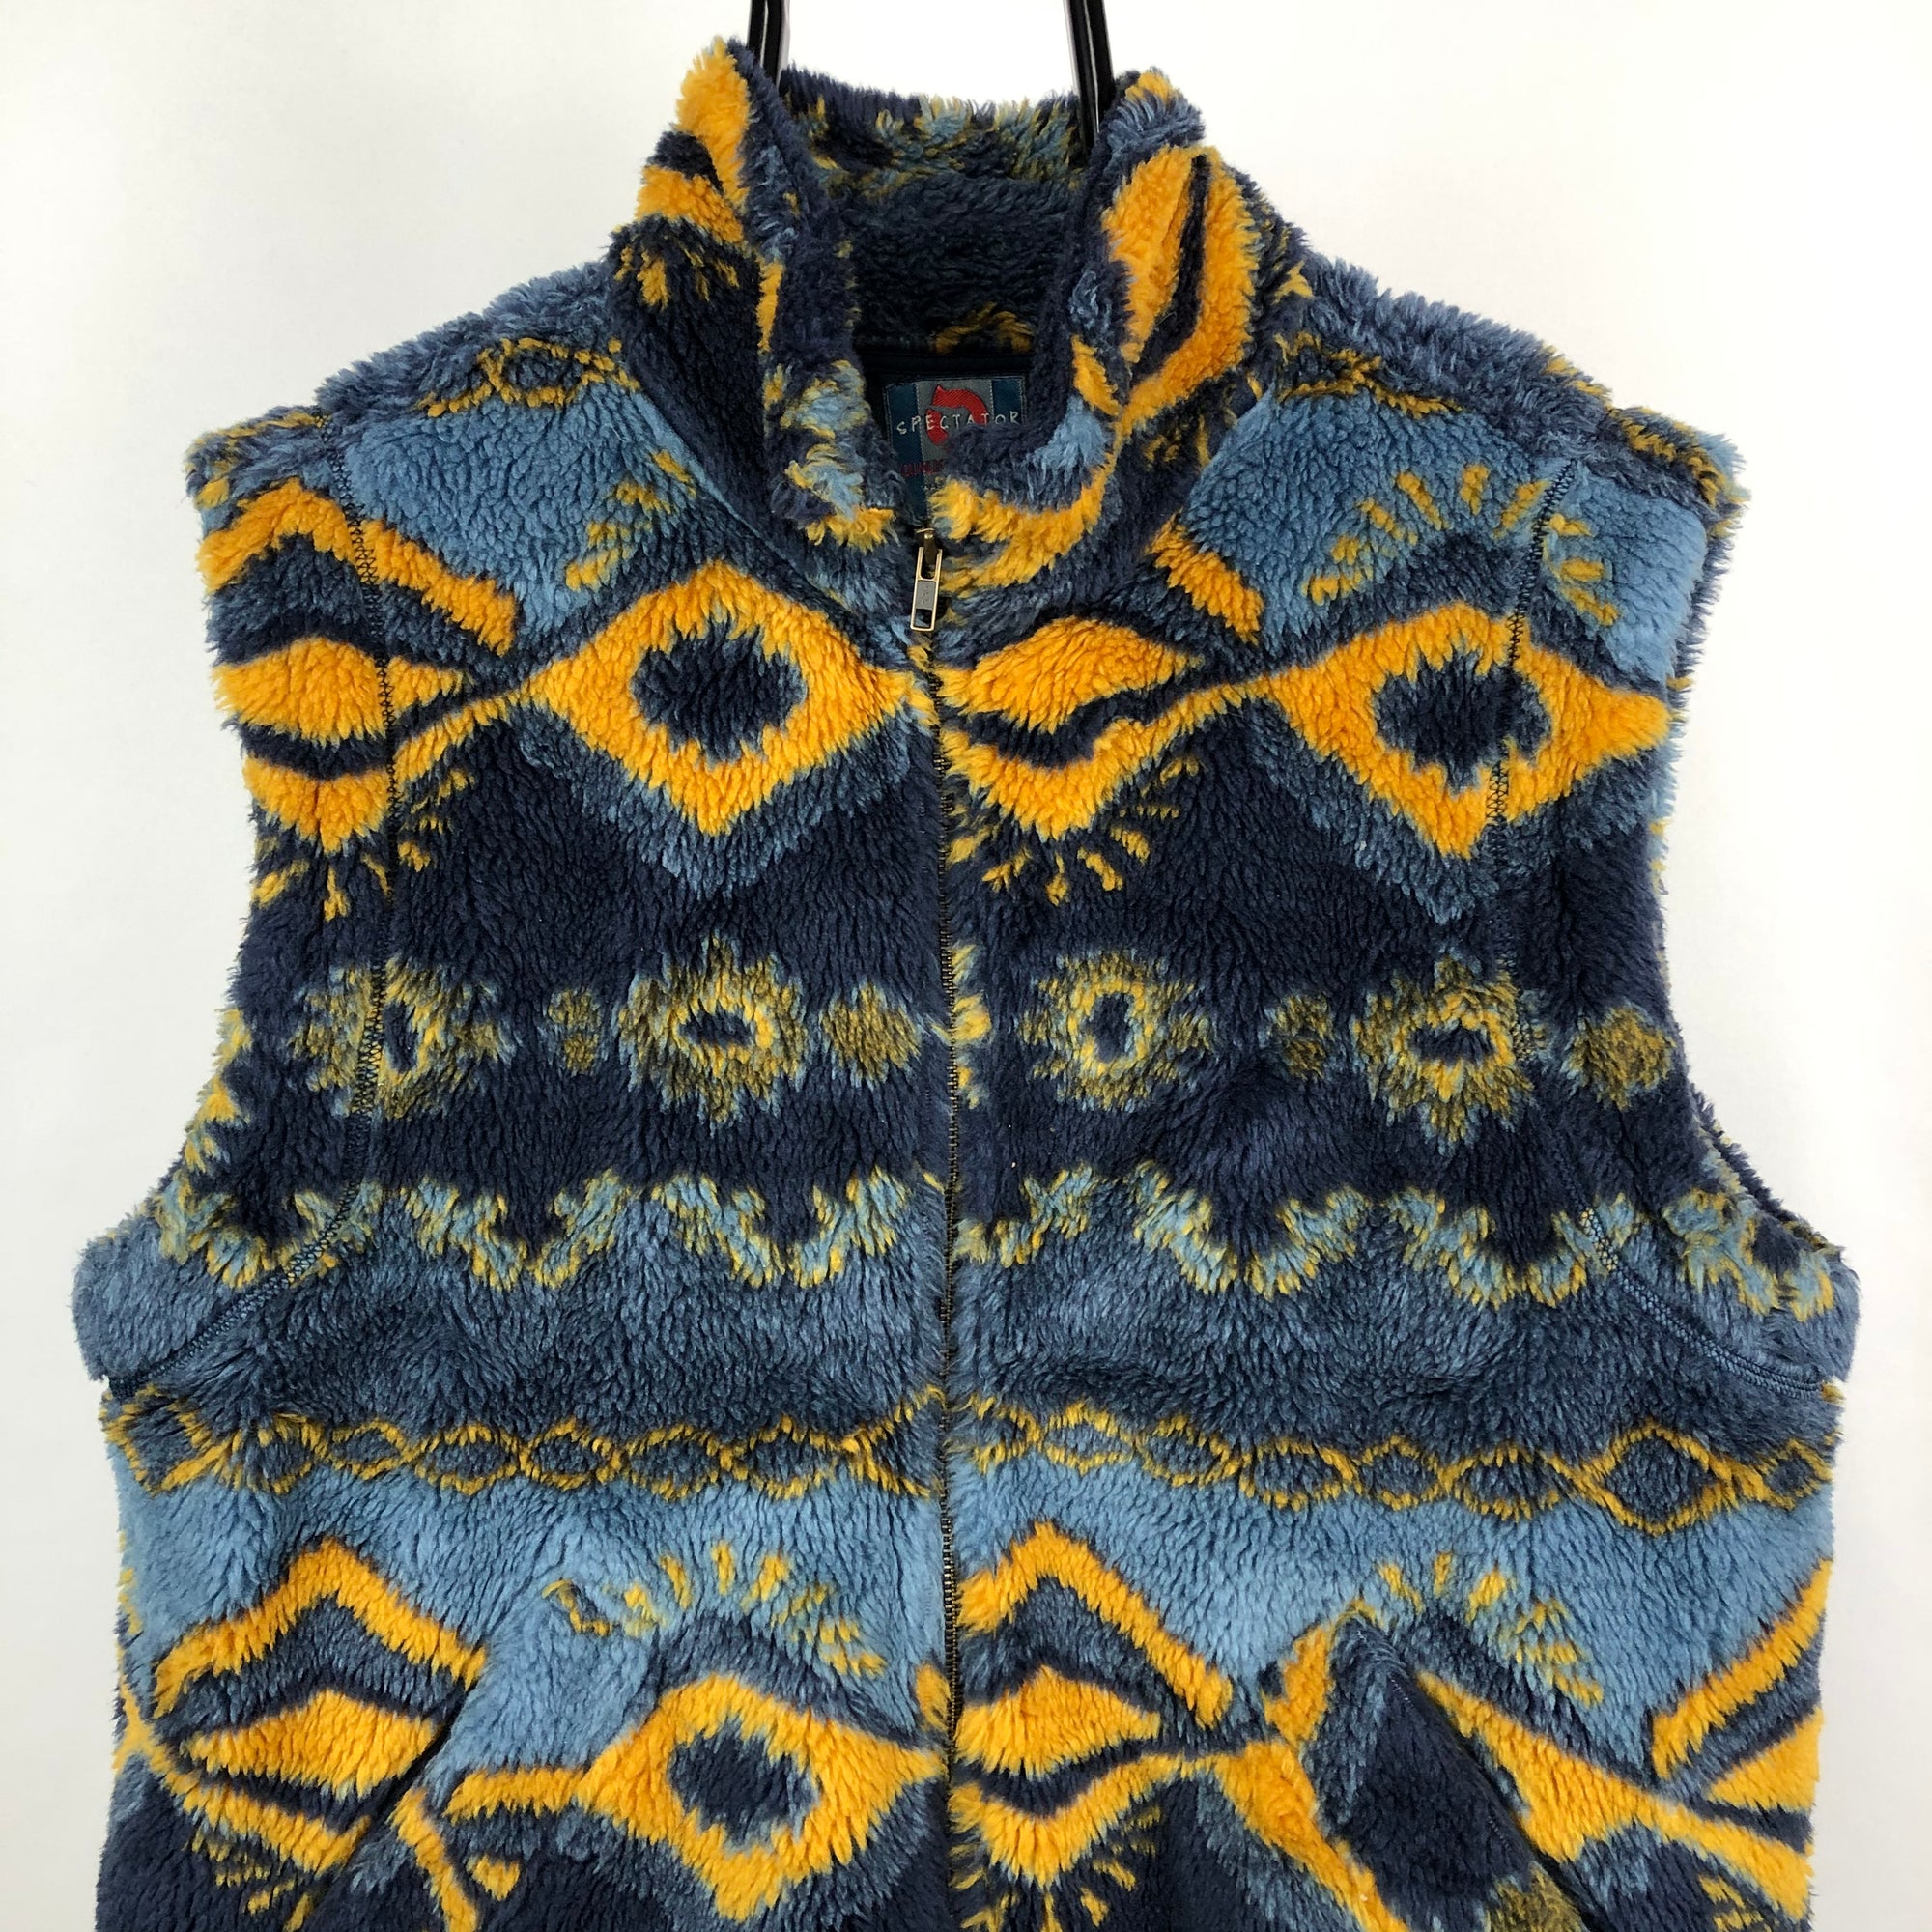 Vintage Sherpa Fleece Best in Blue/Yellow - Men's Large/Women's XL